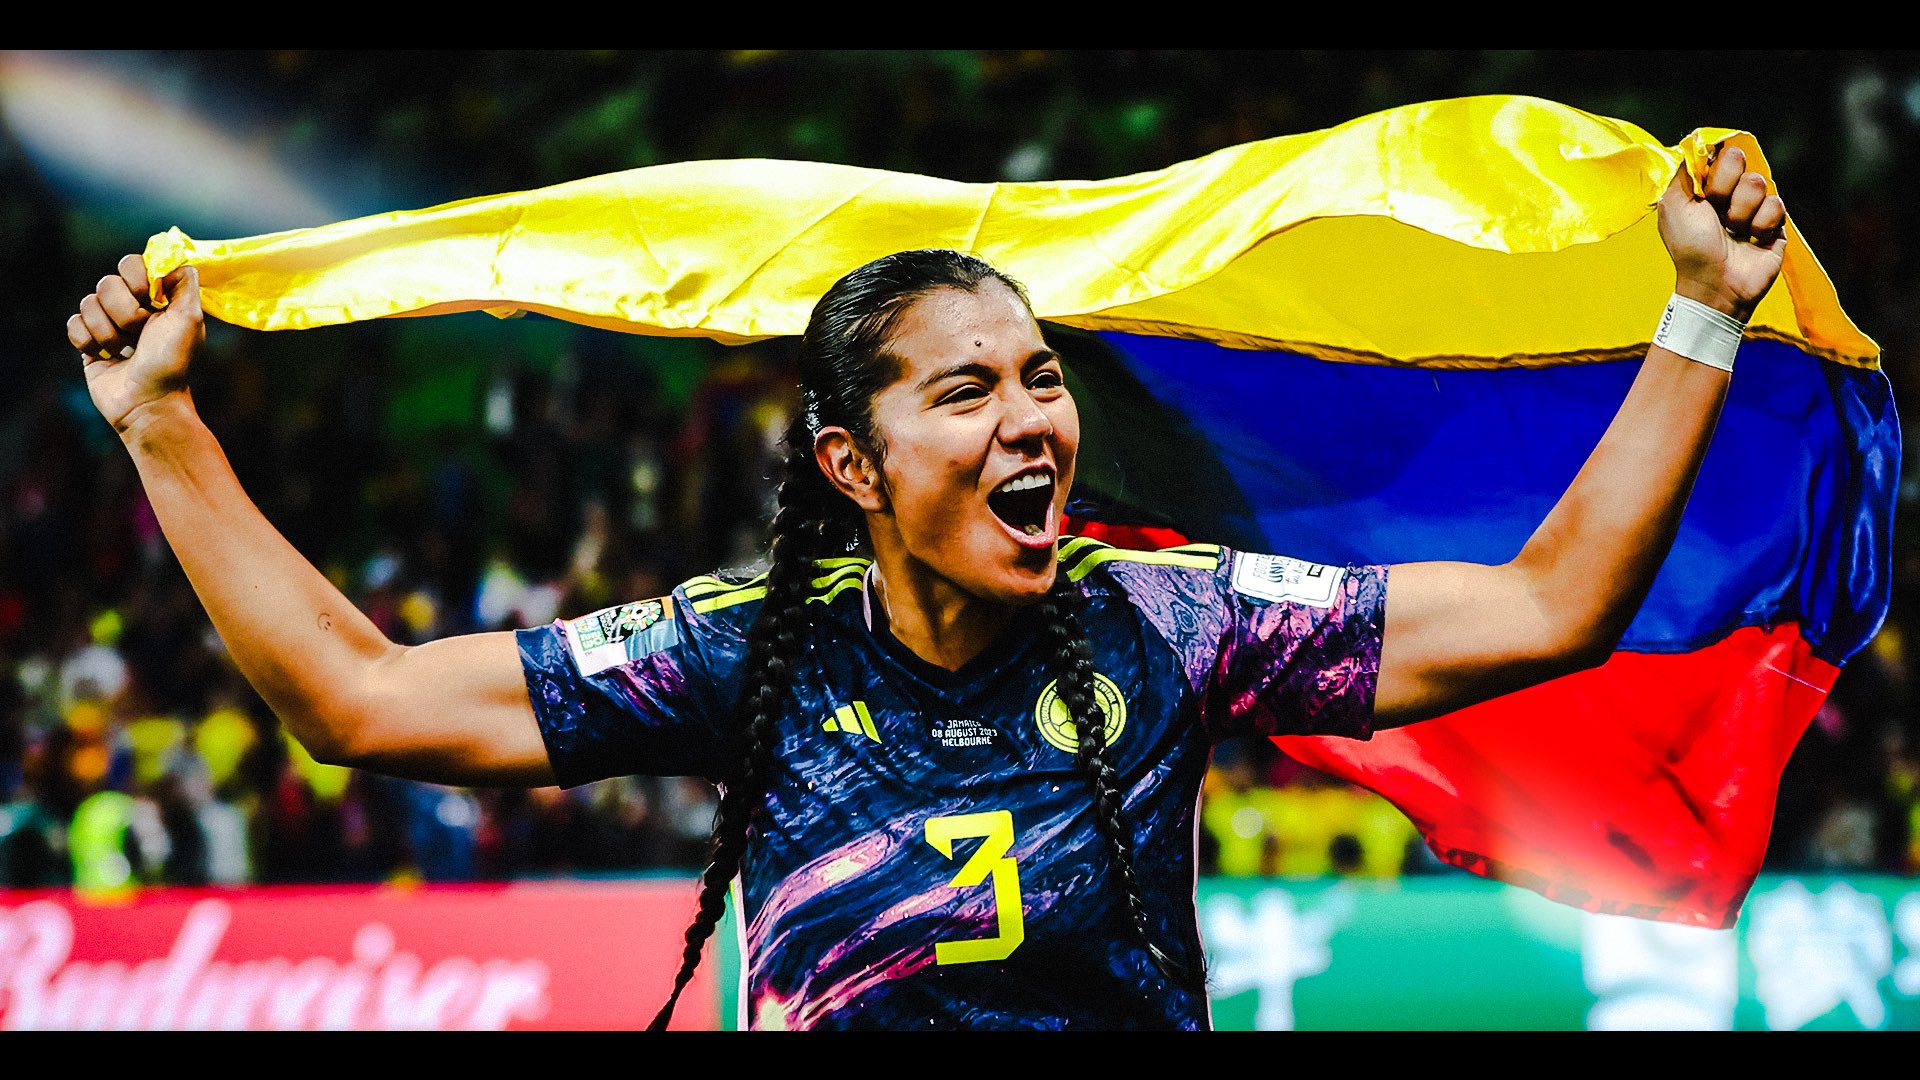 Imagen noticia Liderazgos deportivos en ascenso en Colombia